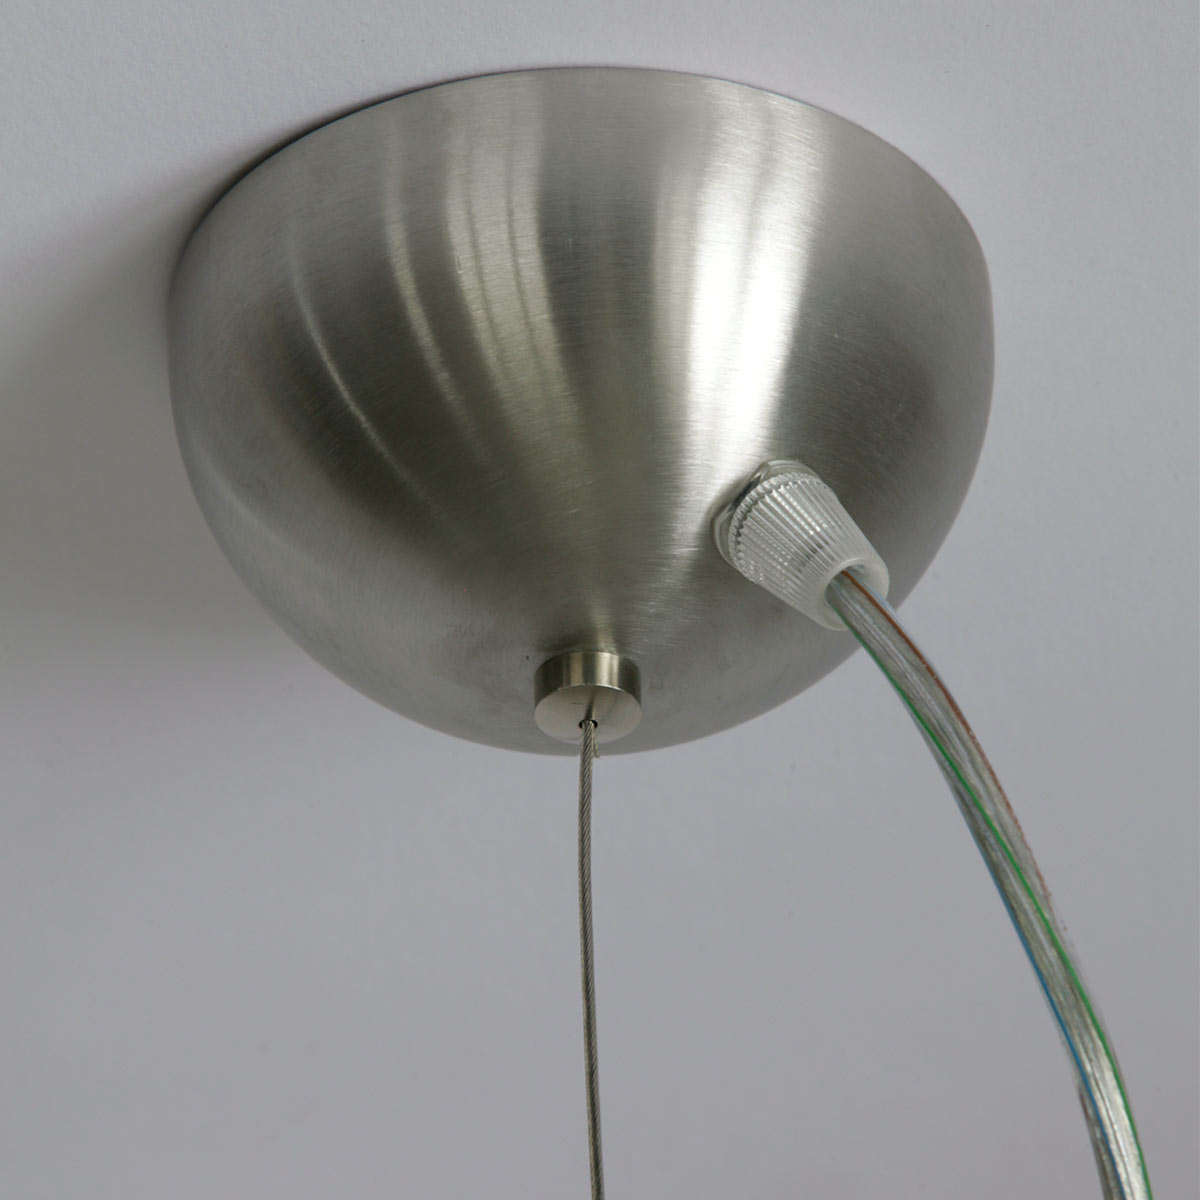 Klassische Opalglas-Pendelleuchte ASTRID mit Stahlseil: Deckenbaldachin mit Ø 10 cm, hier in Edelstahl satiniert